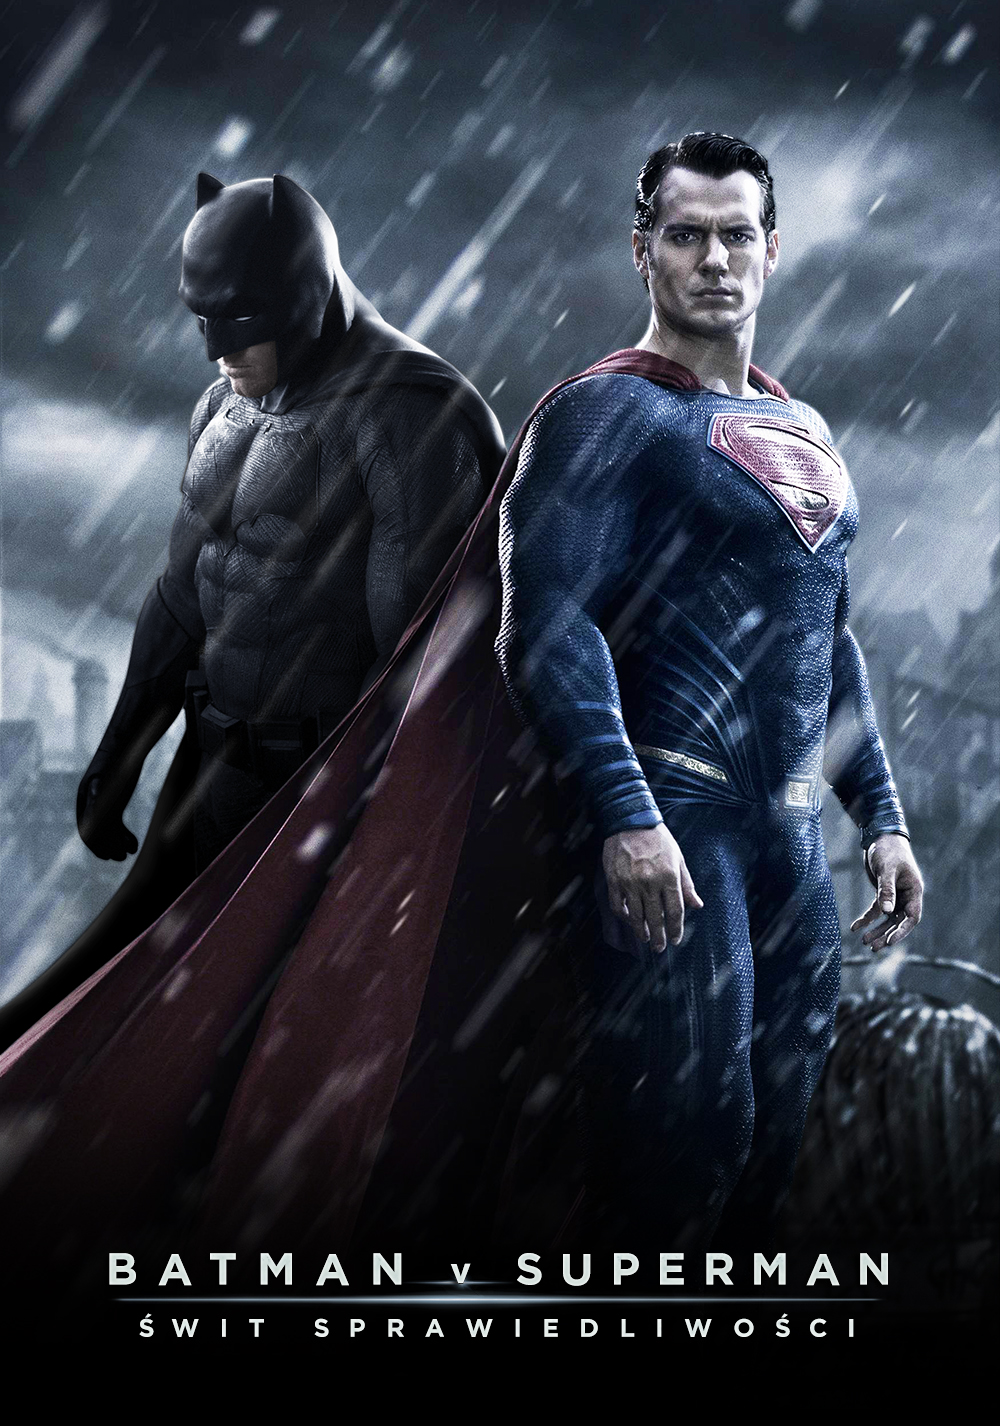 Batman v Superman: Dawn of Justice Art